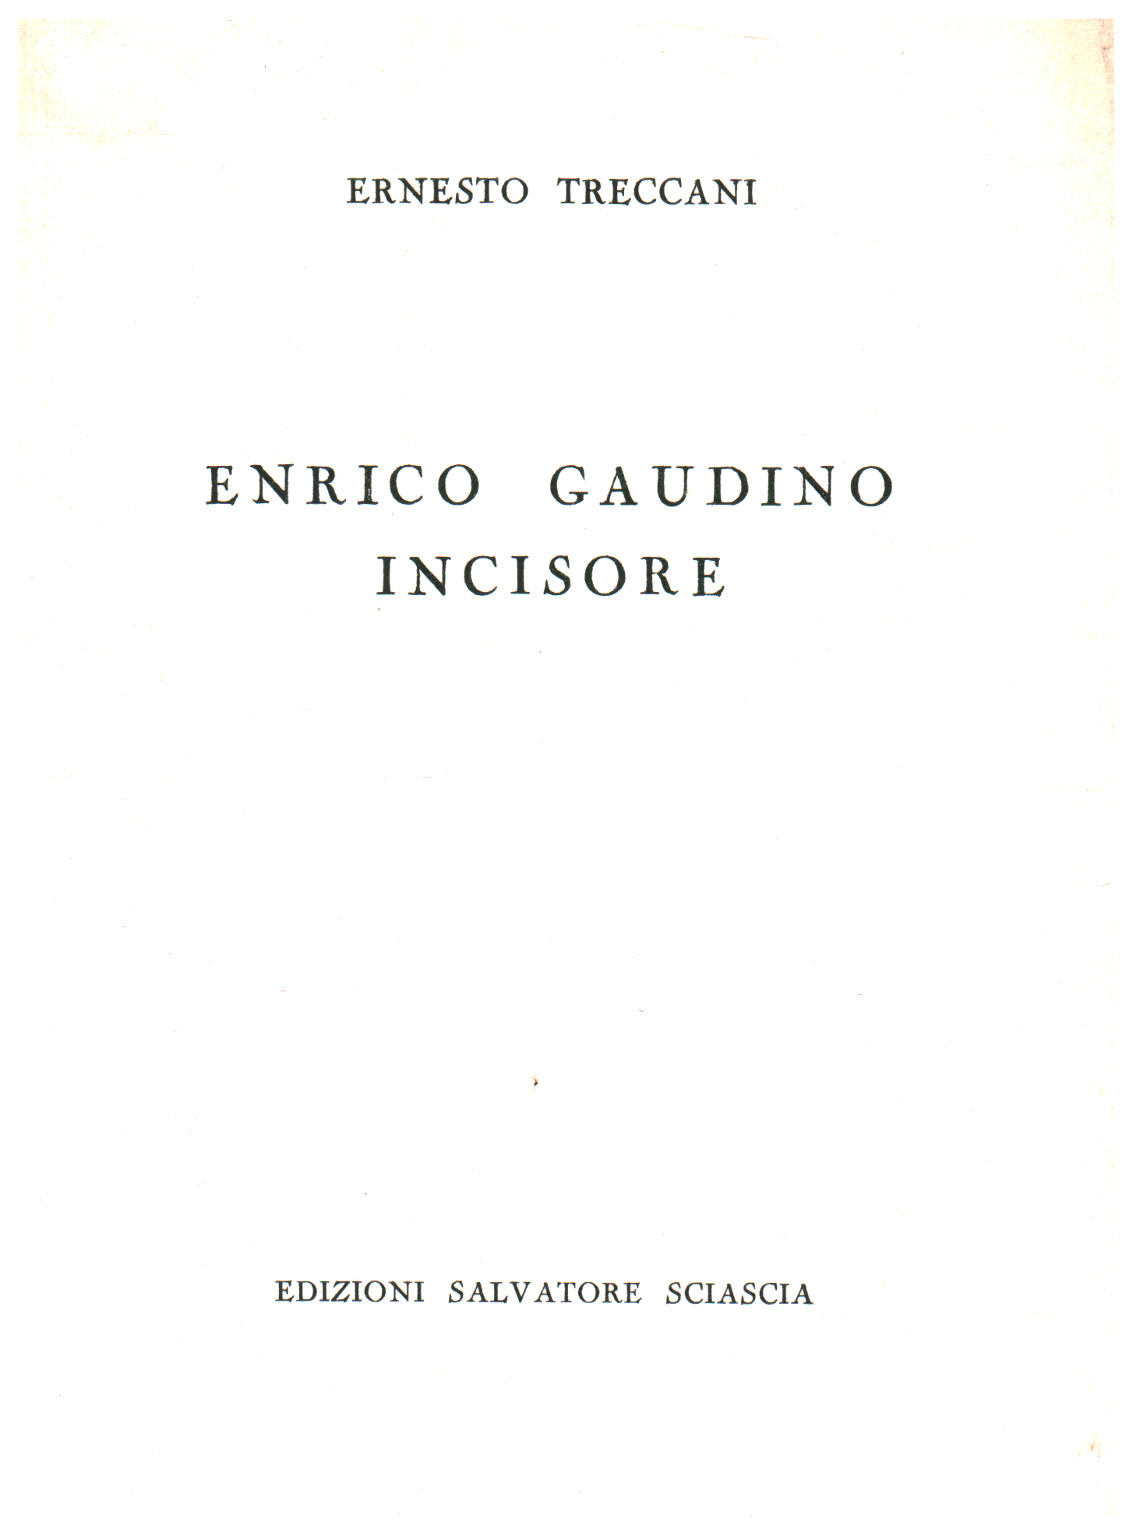 Enrico Gaudino, graveur, s.un.